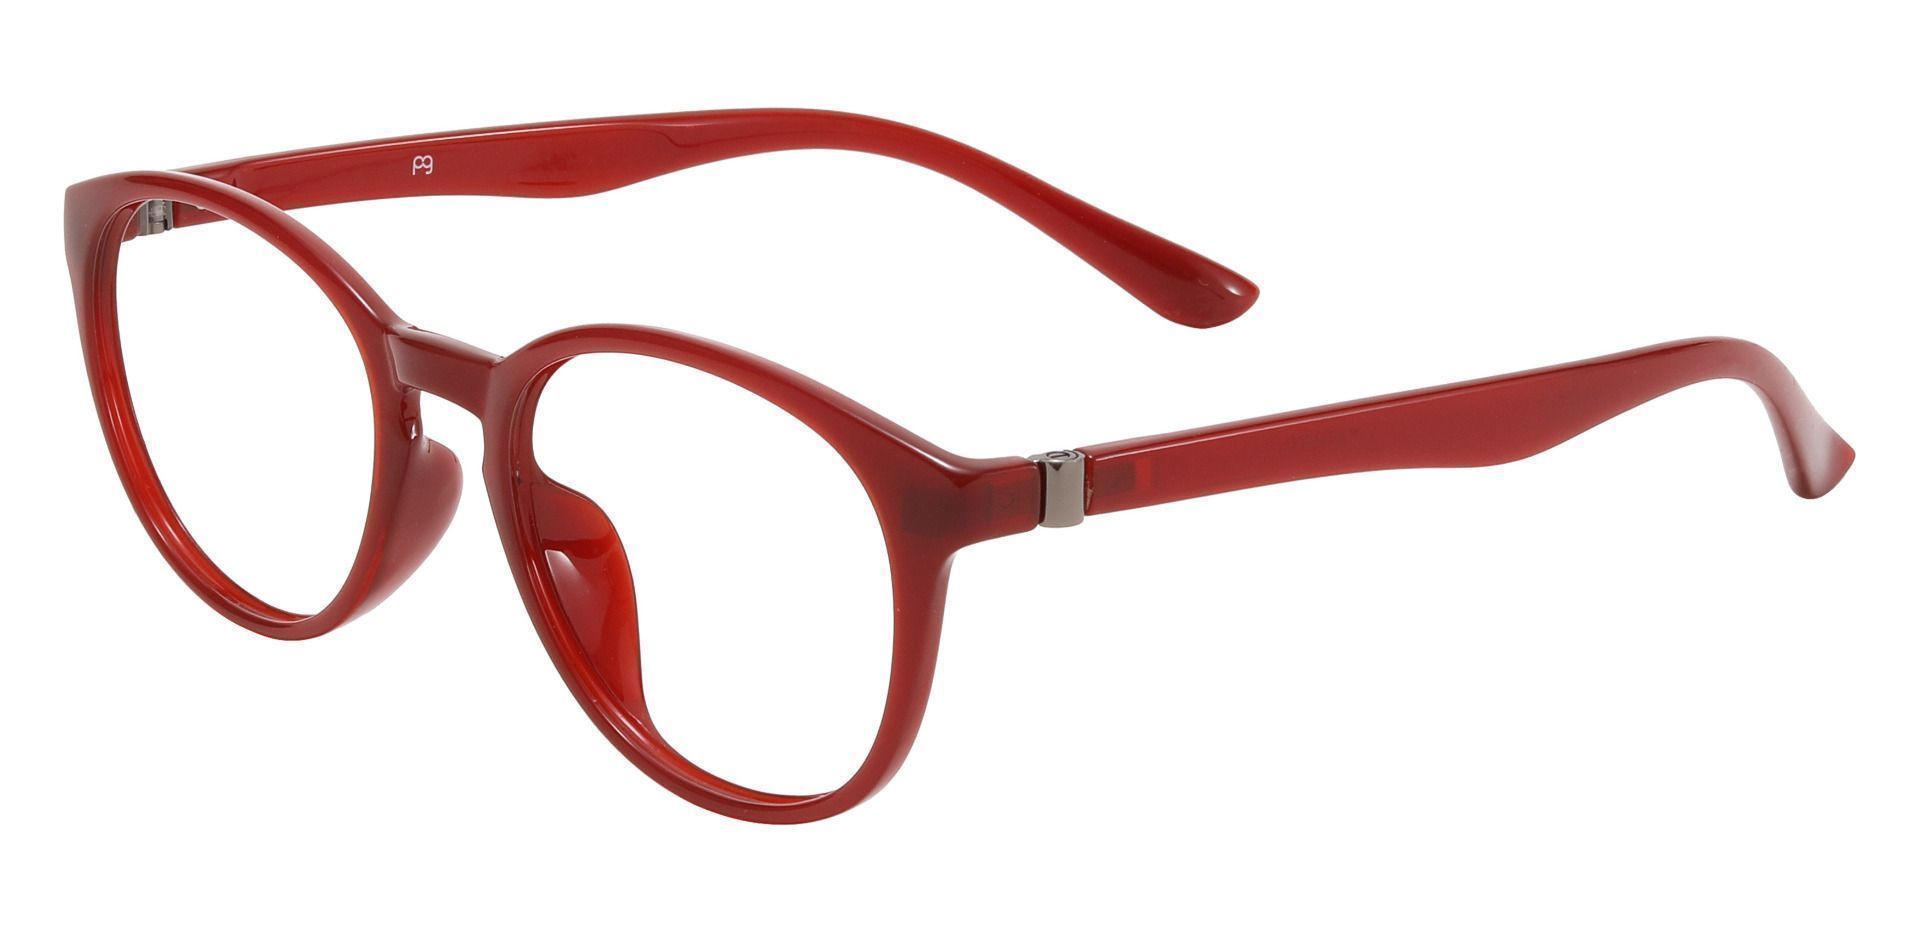 Celia Oval Non-Rx Glasses - Red